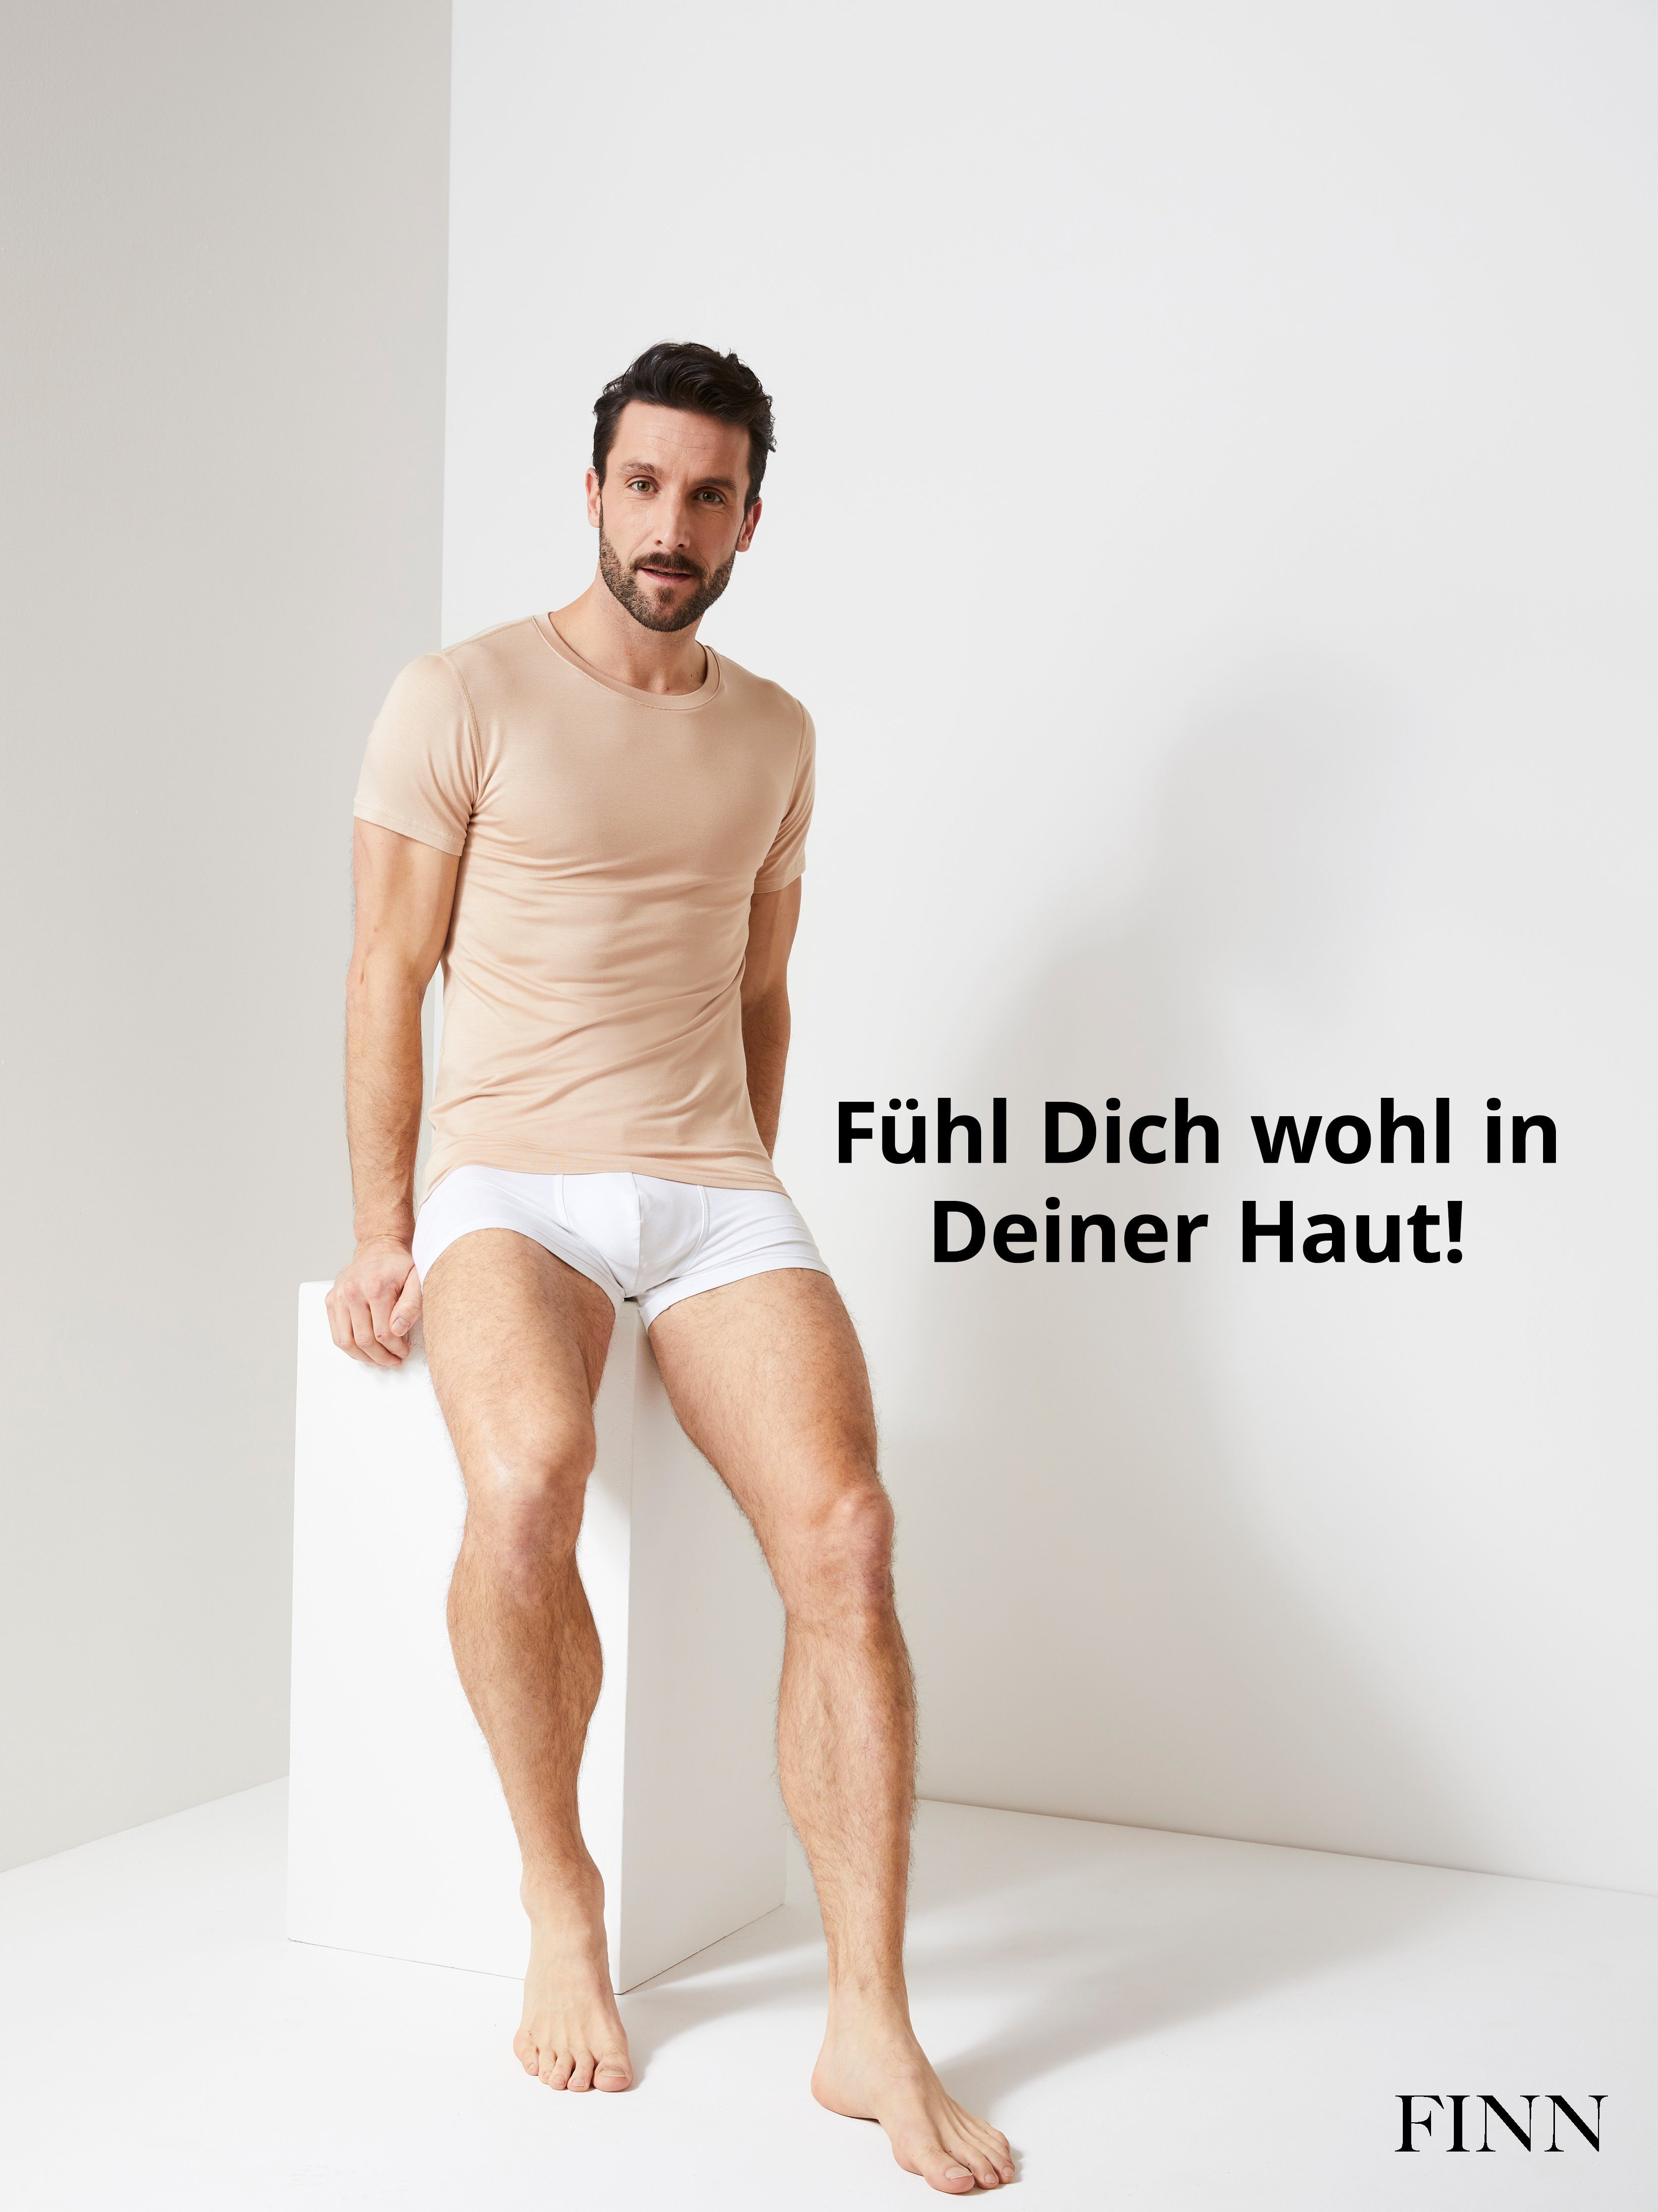 FINN Design Micro-Modal Unterhemd Tragekomfort Stoff, Light-Beige Unterhemd Kurzarm maximaler Herren Rundhals Business feiner mit